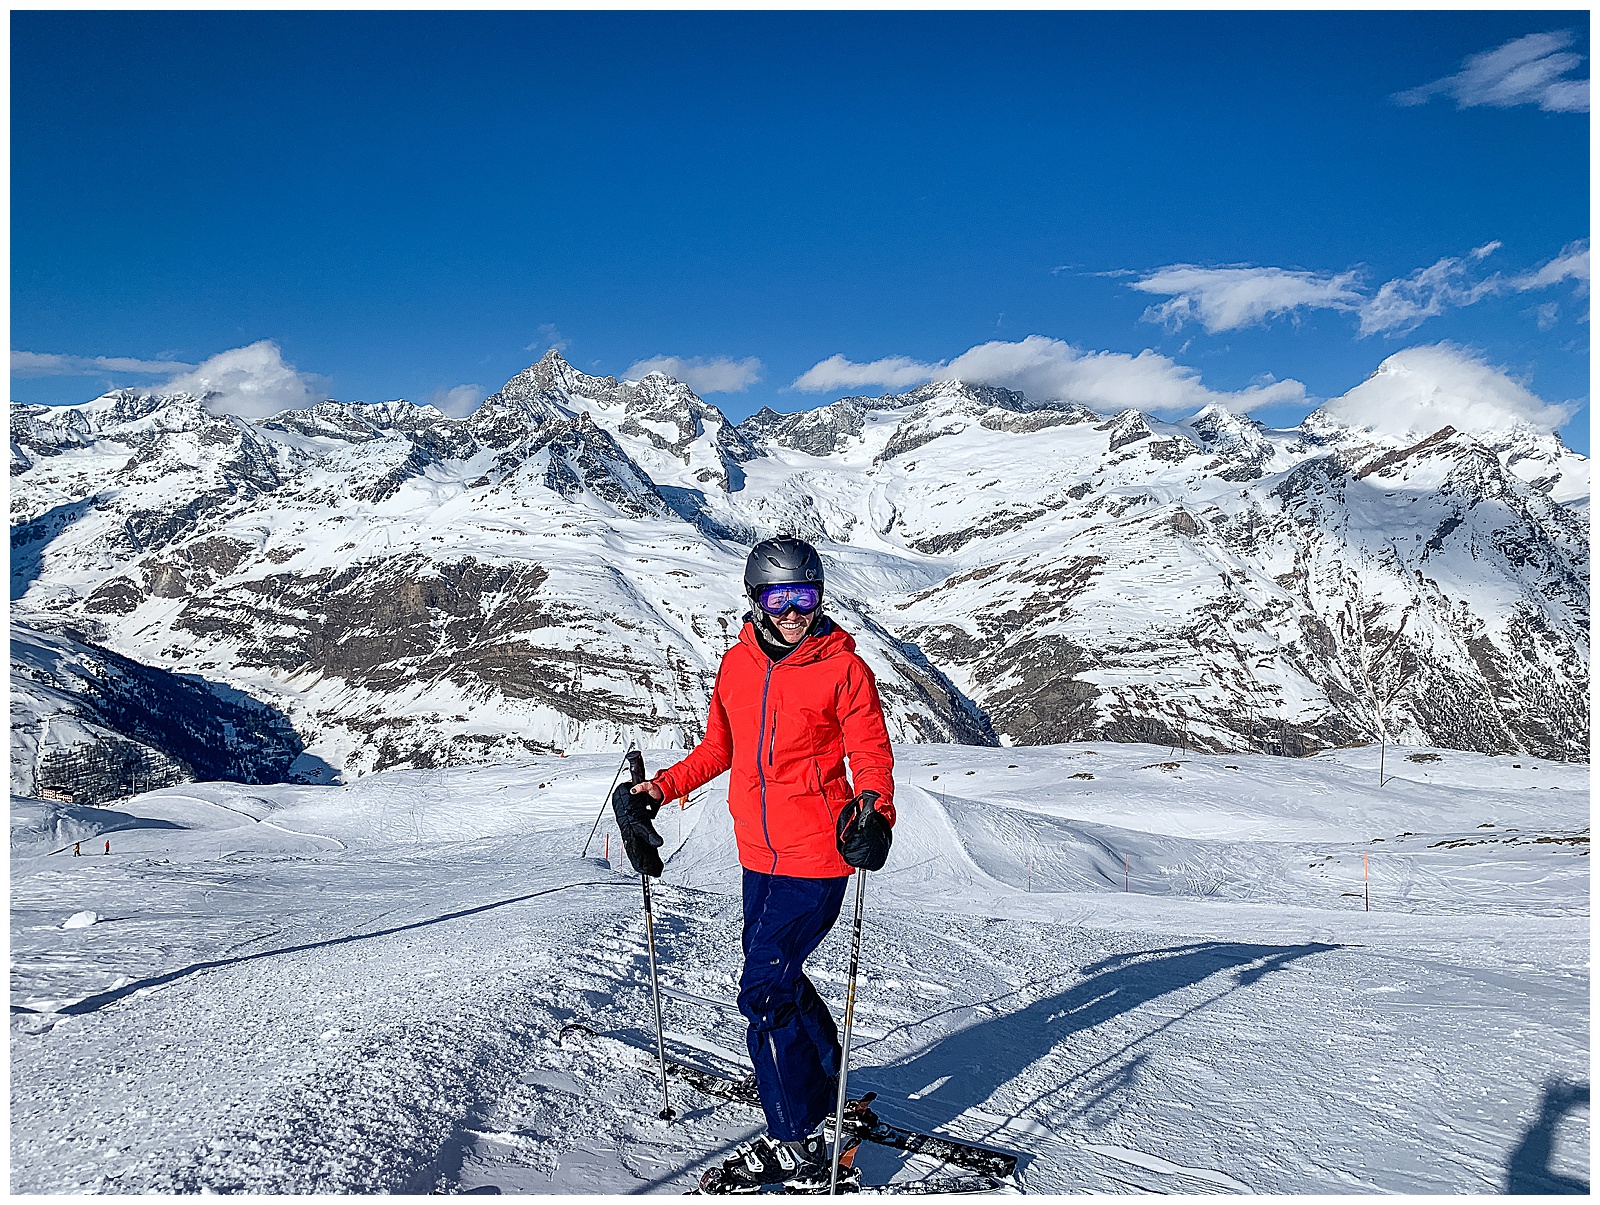 Skiing in the Alps in Zermatt Switzerland